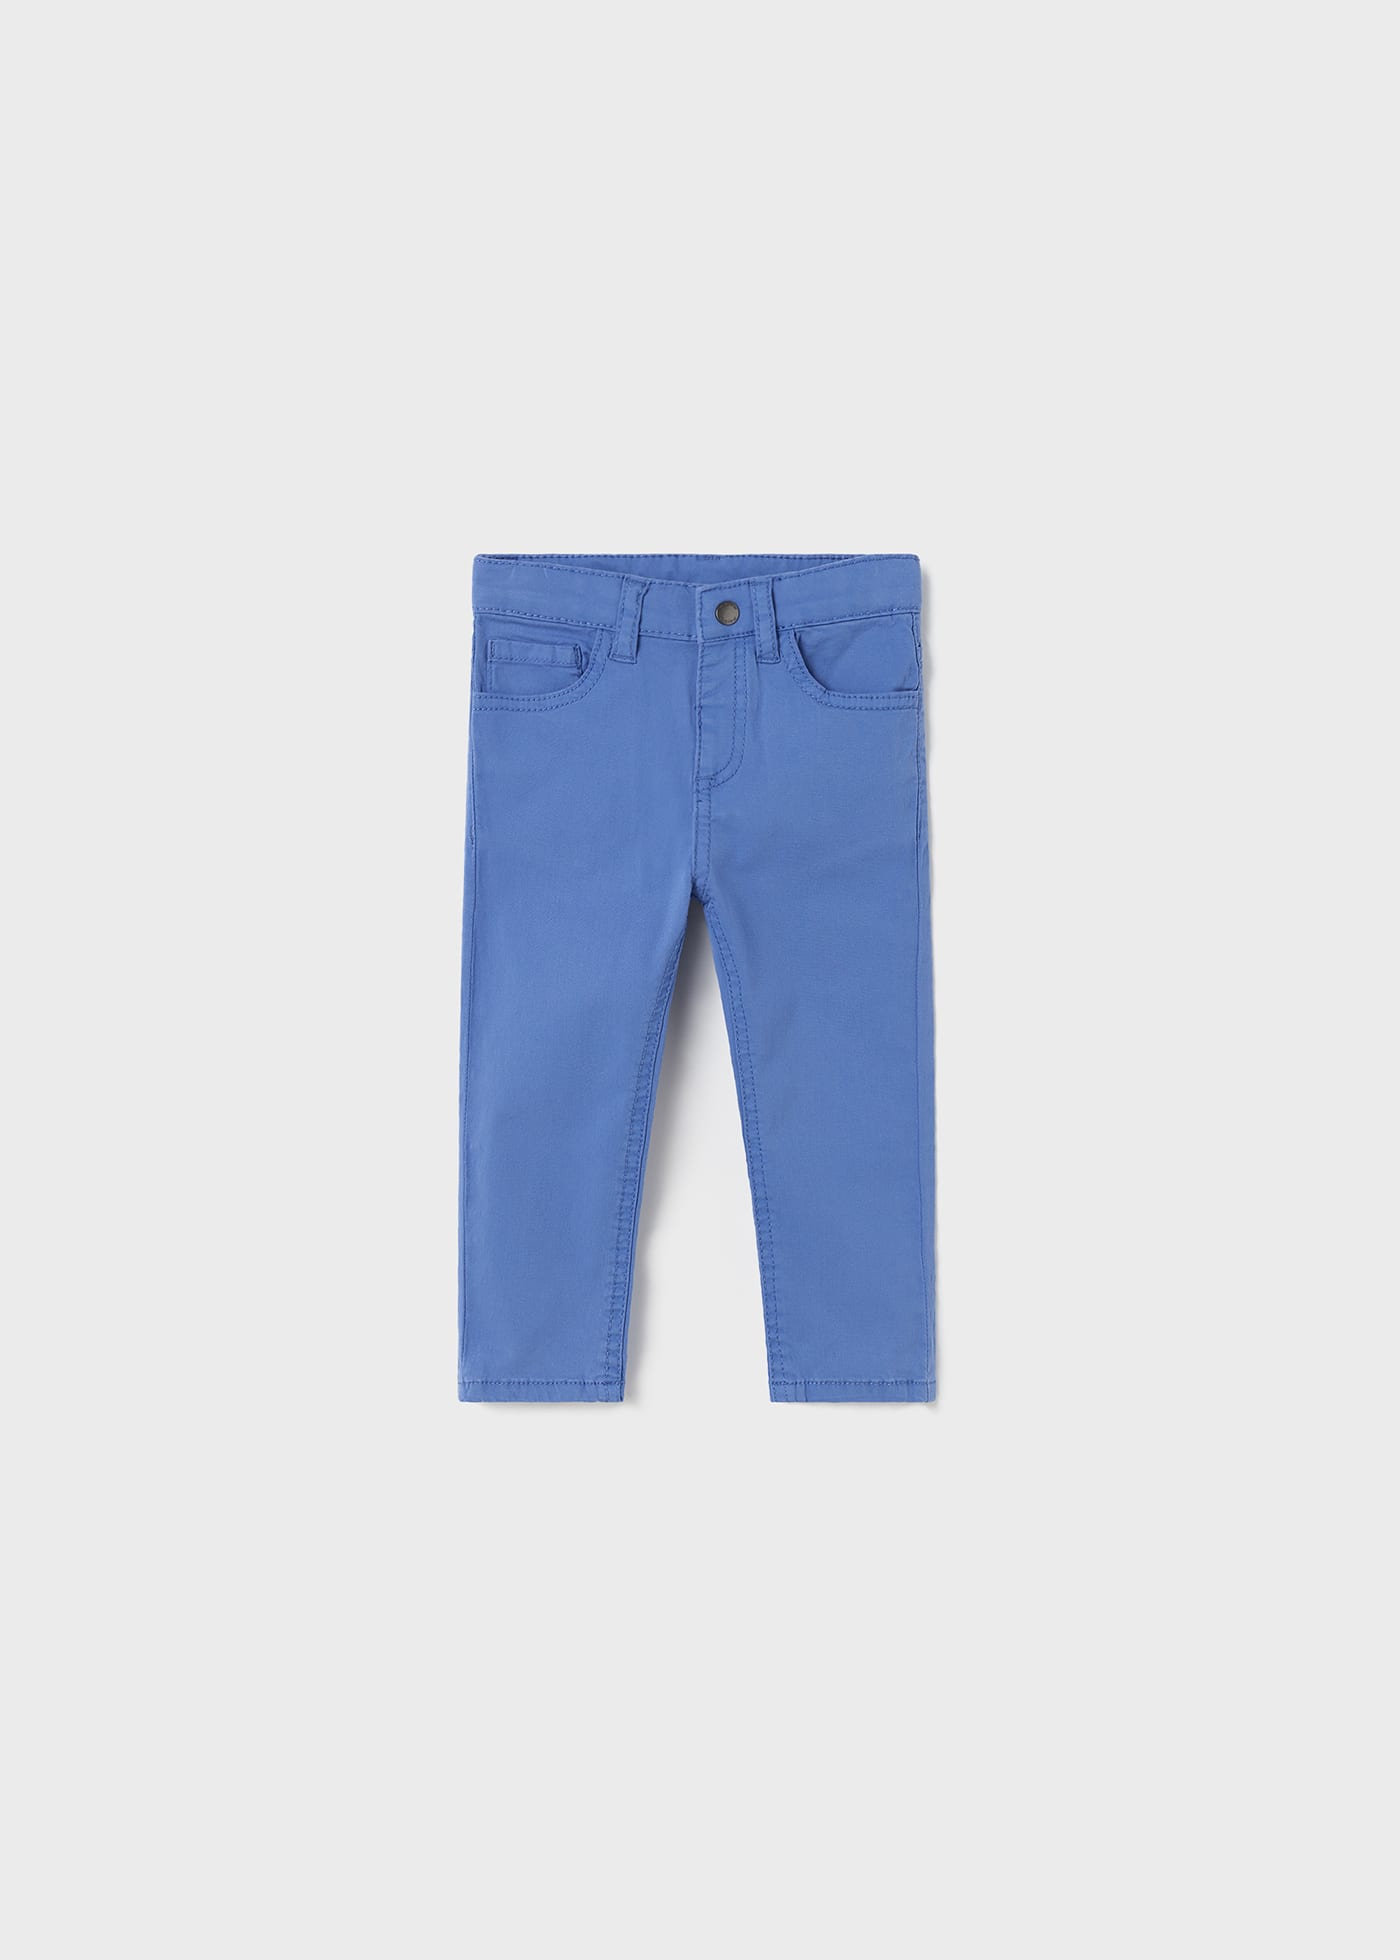 (image for) Pantalone slim fit cotone sostenicile neonato mayoral Art. 23-00506-034